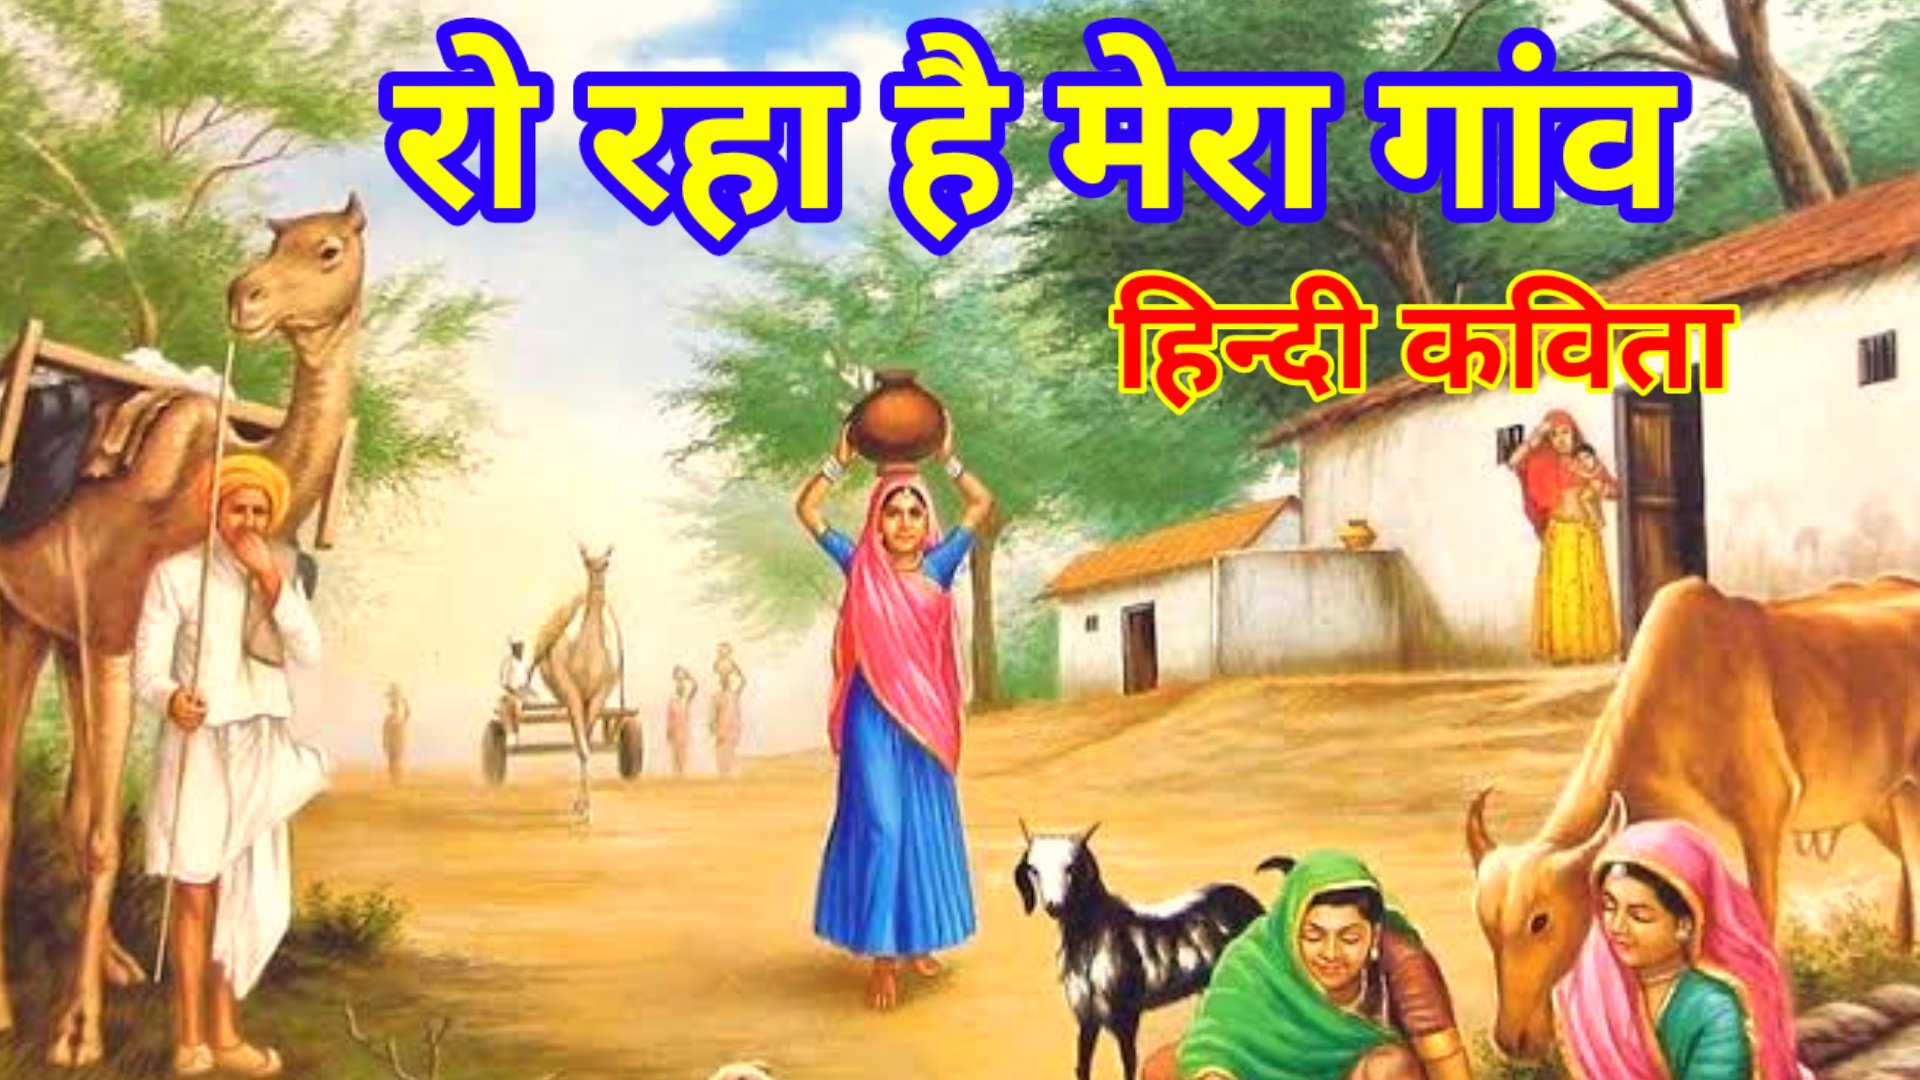 रो रहा है गांव मेरा - poem on village in hindi